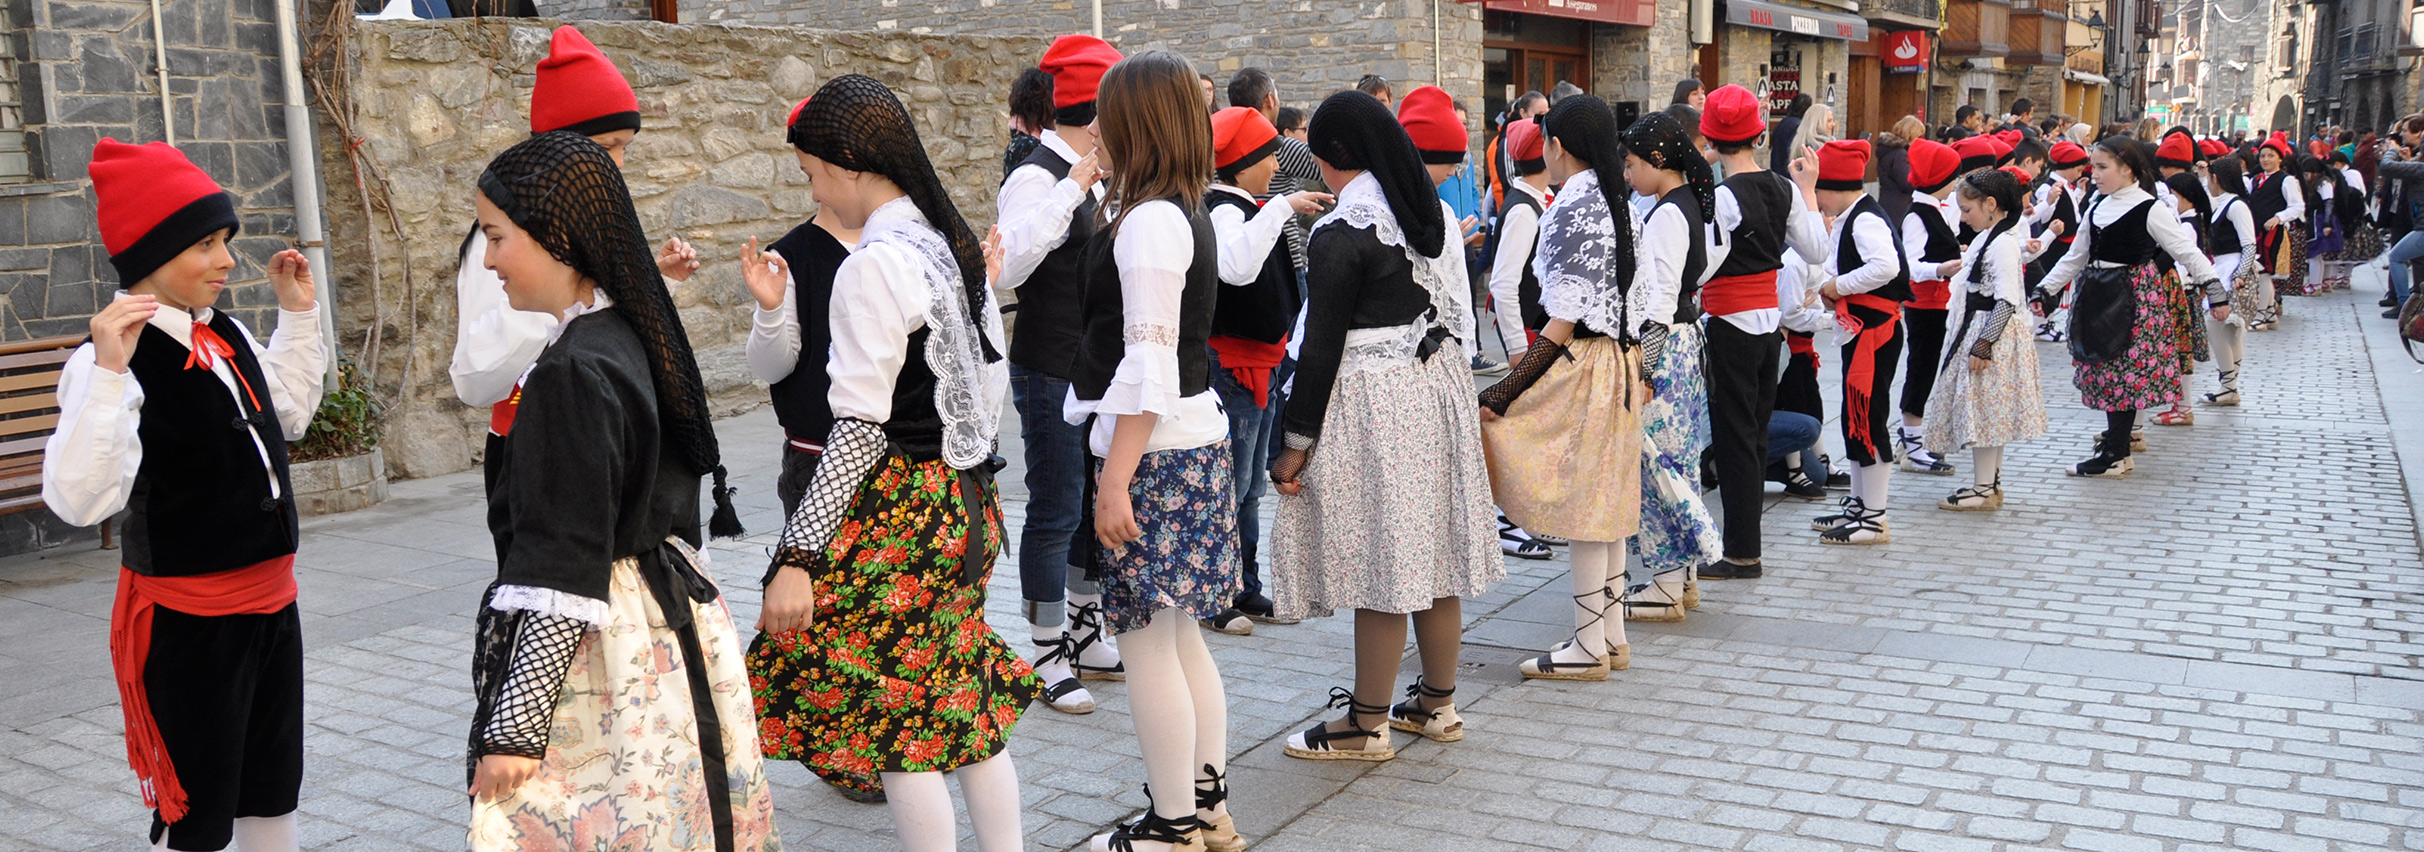 Les danses vives arriben a Esterri d'Àneu a manera de preludi del Dansàneu 2019 - DANSÀNEU - FESTIVAL DE CULTURES DEL PIRINEU